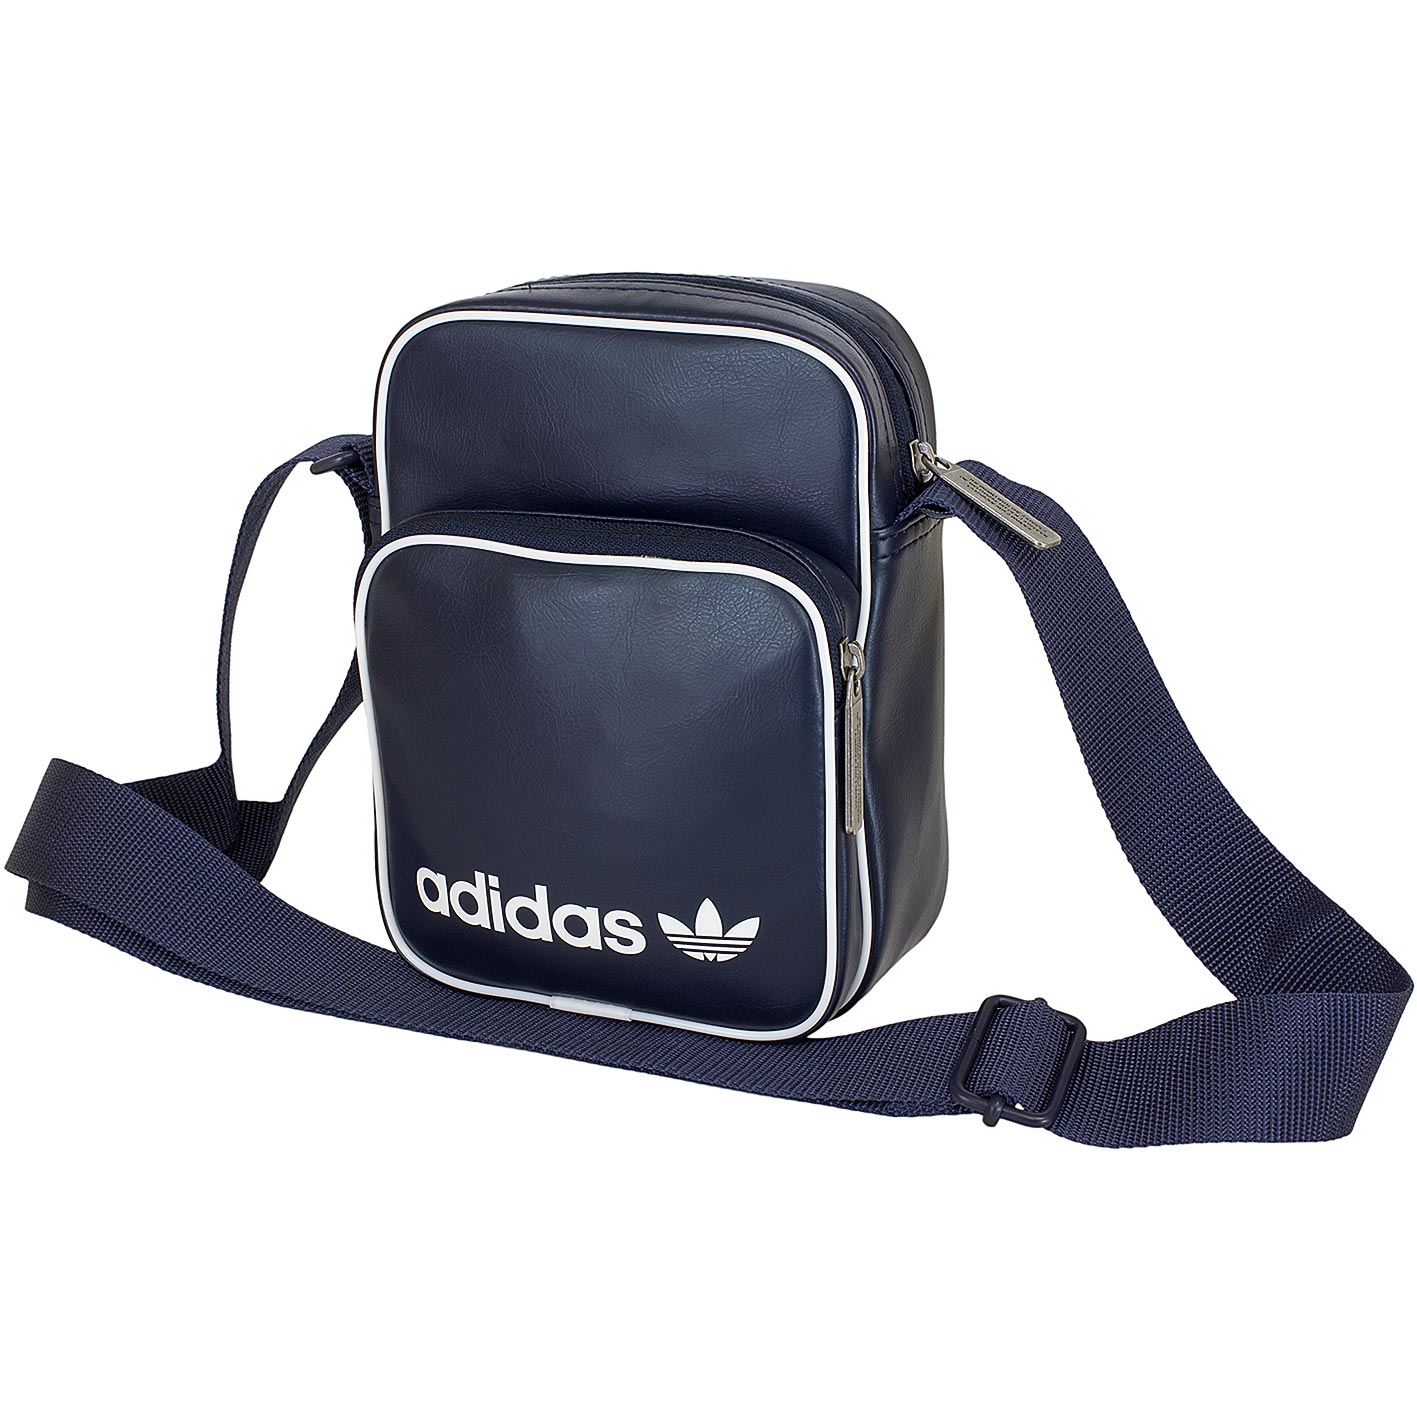 ☆ Adidas Originals Mini Tasche Vintage dunkelblau - hier bestellen!